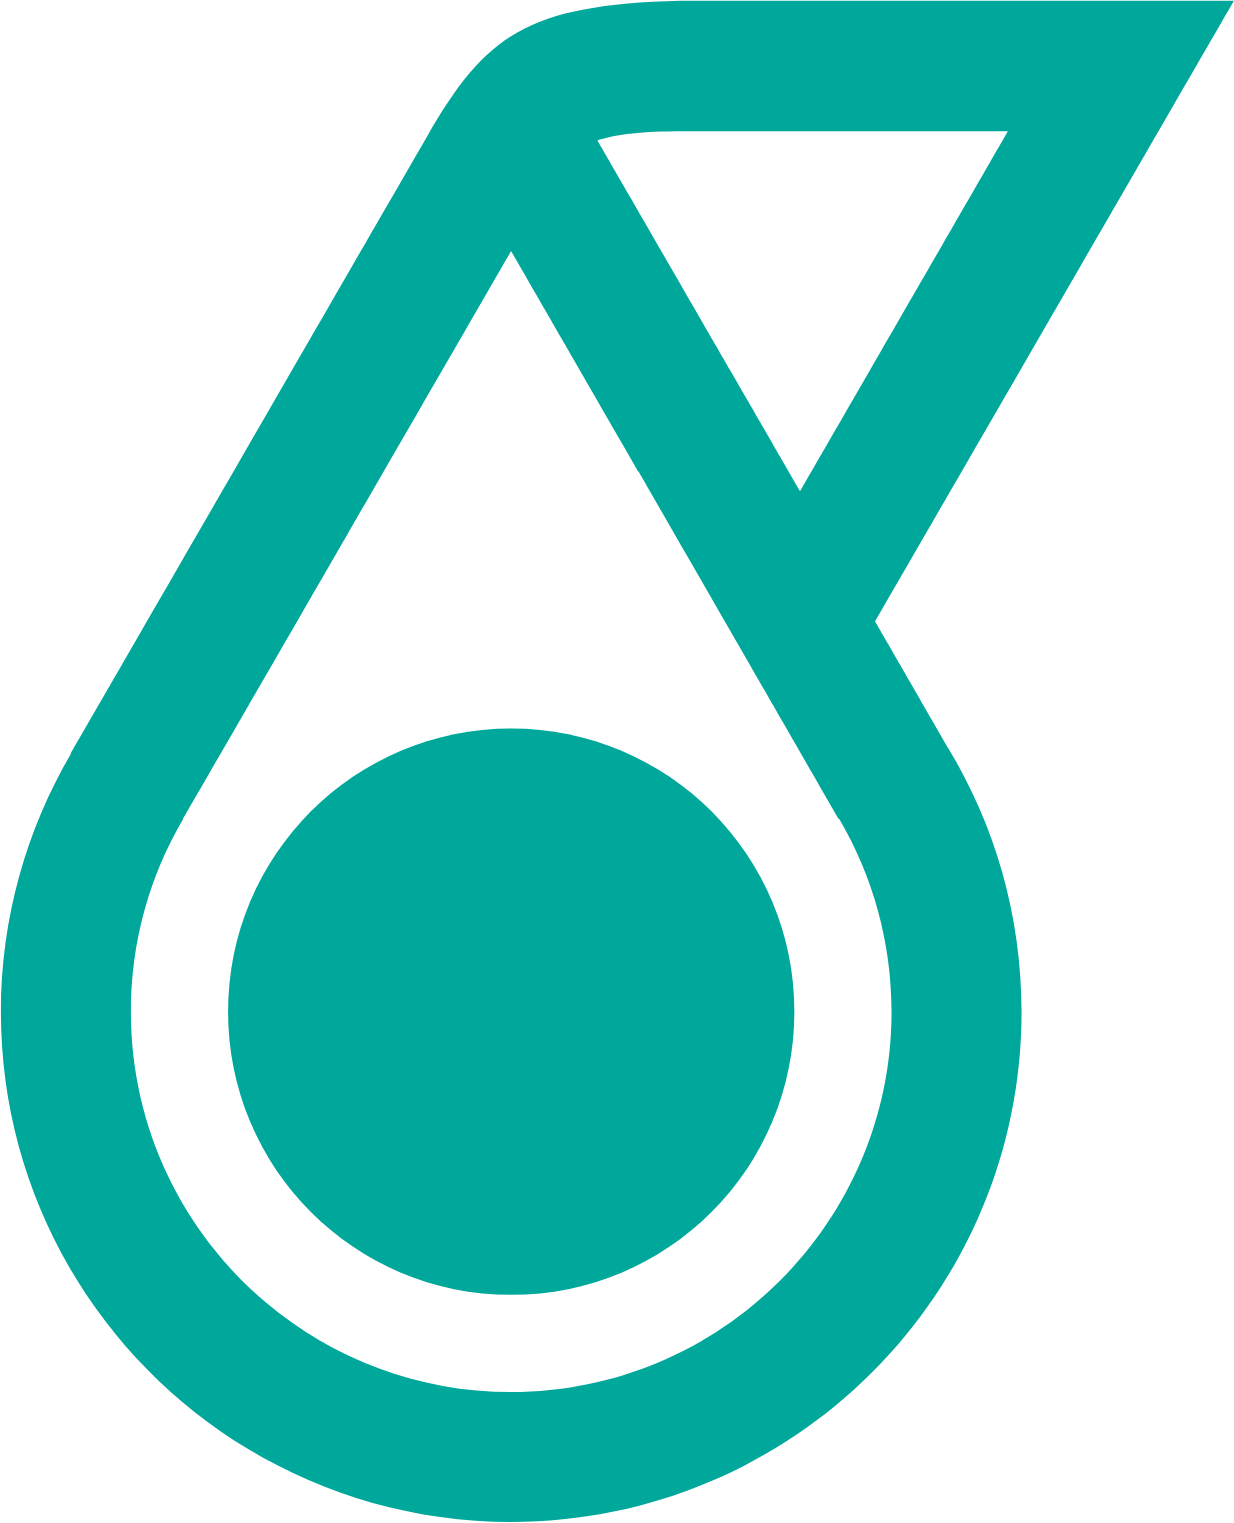 PetGas (Petronas Gas) logo (PNG transparent)